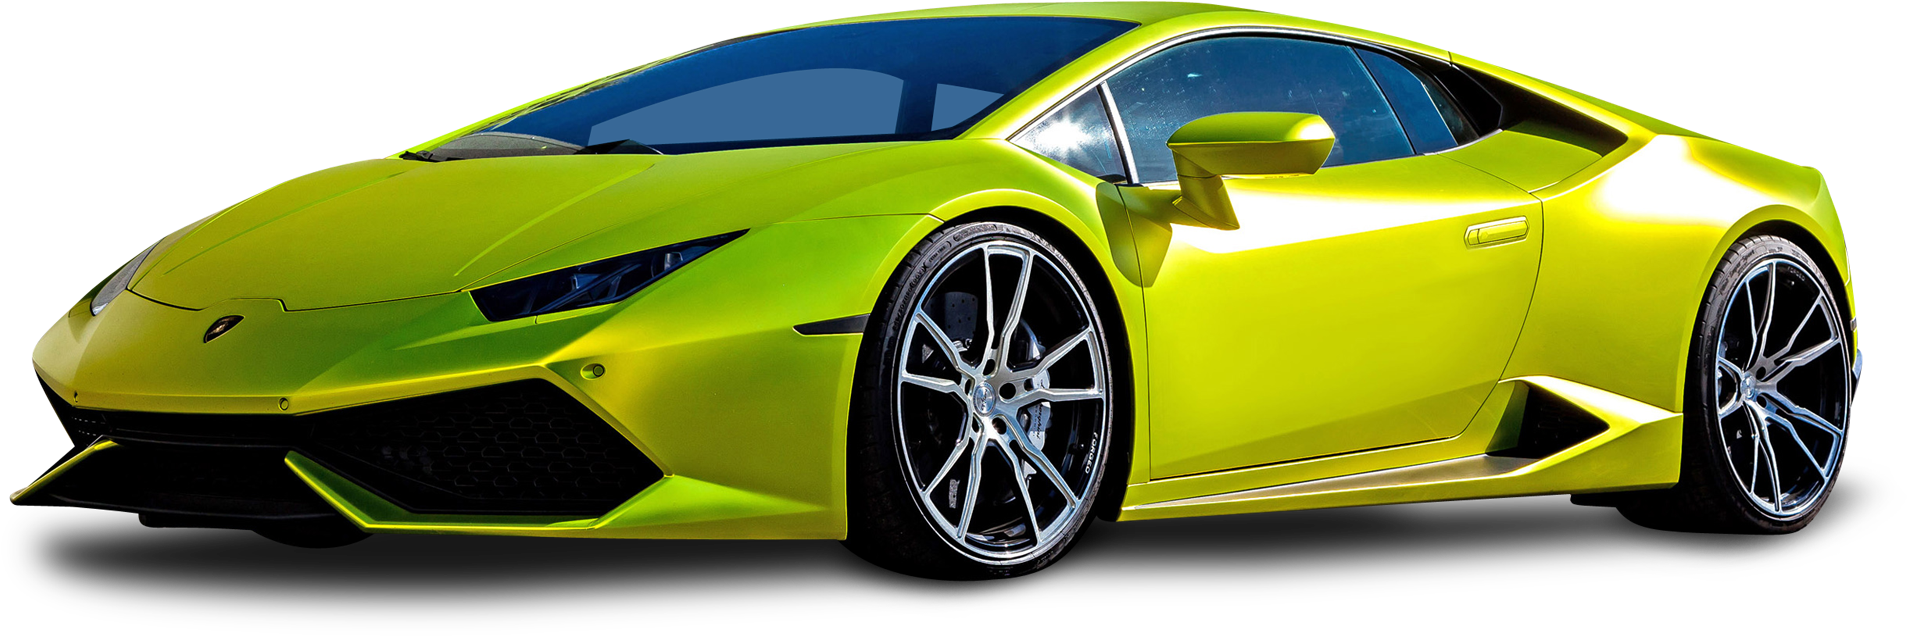 Lamborghini Huracan E V O Yellow Side View PNG